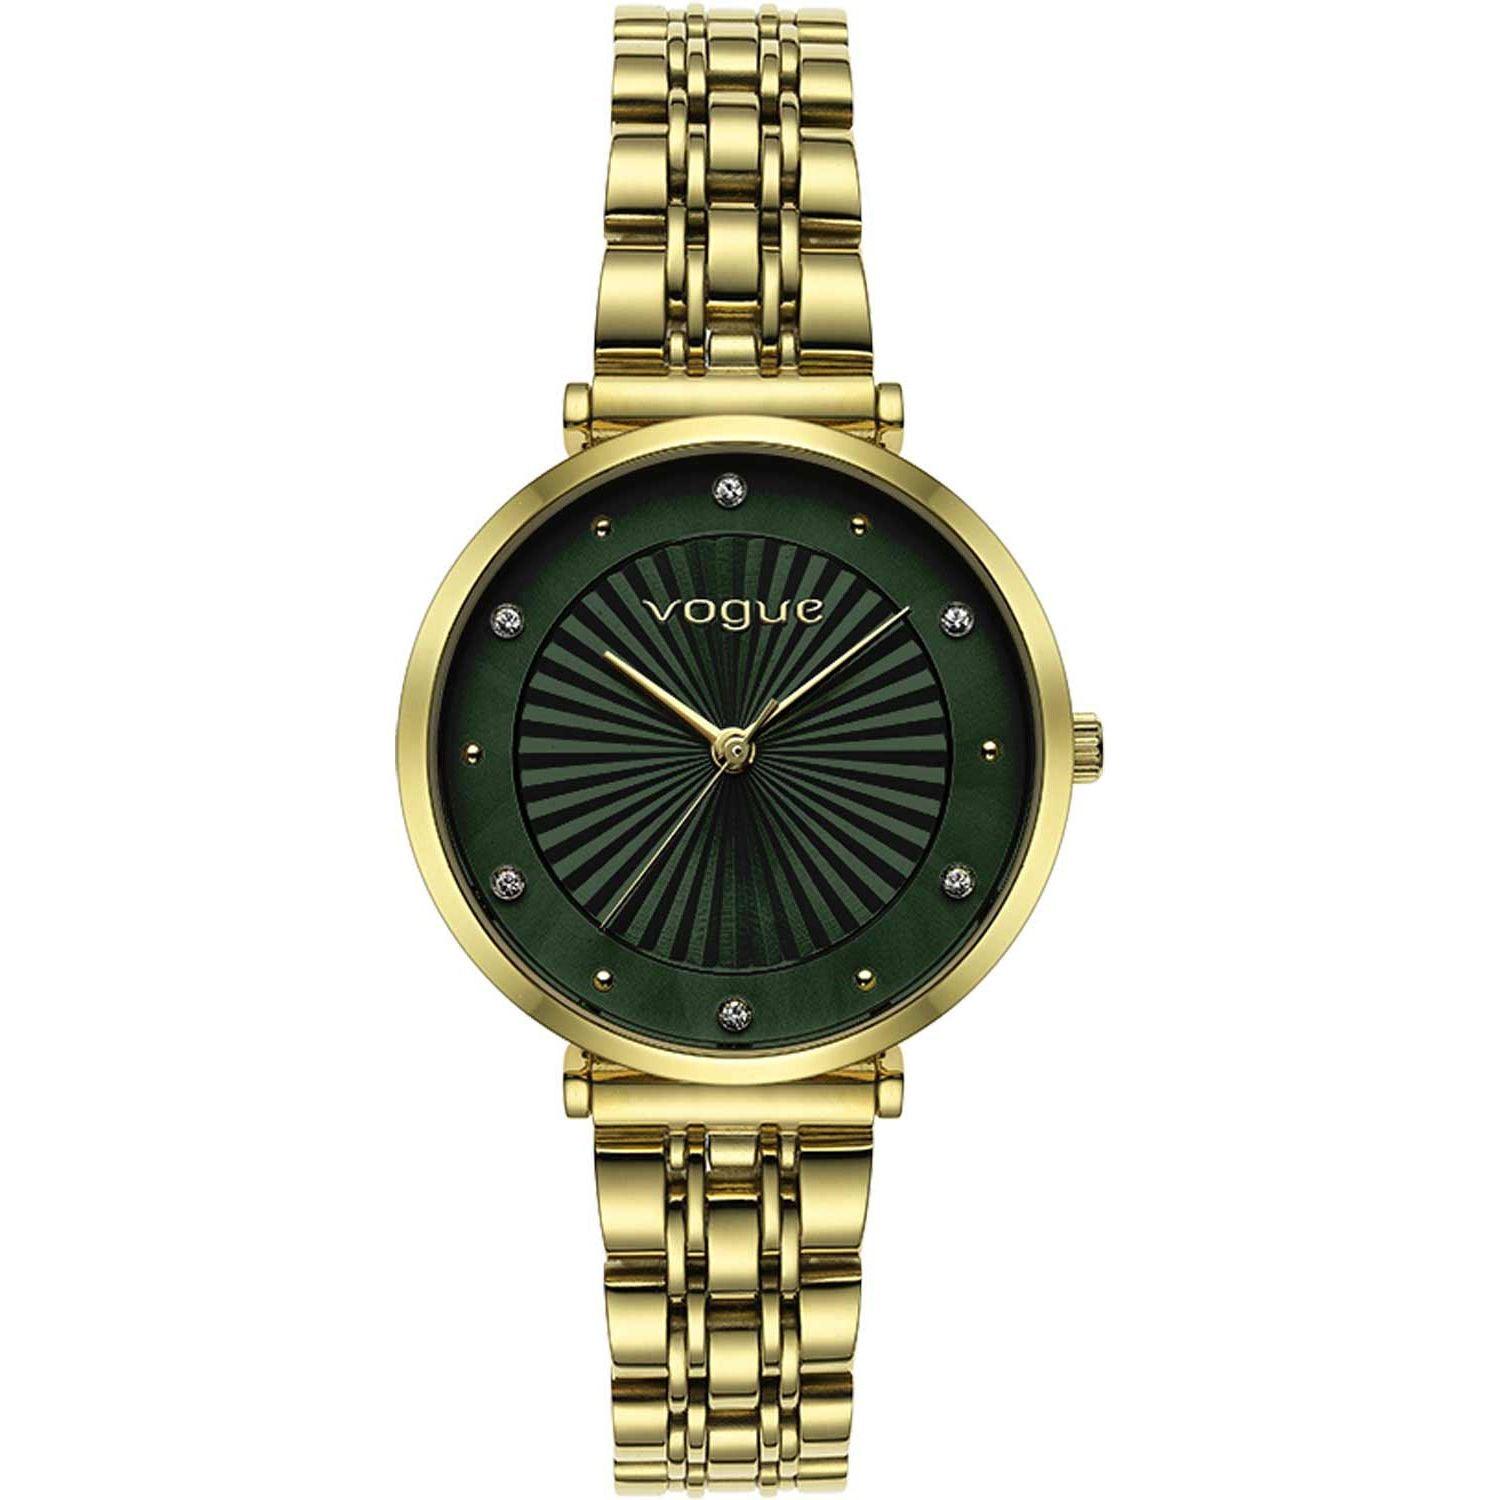 Γυναικείο ρολόι Vogue New Bliss 2020815344 με χρυσό ατσάλινο μπρασελέ και πράσινο καντράν διαμέτρου 32mm με ζιργκόν.